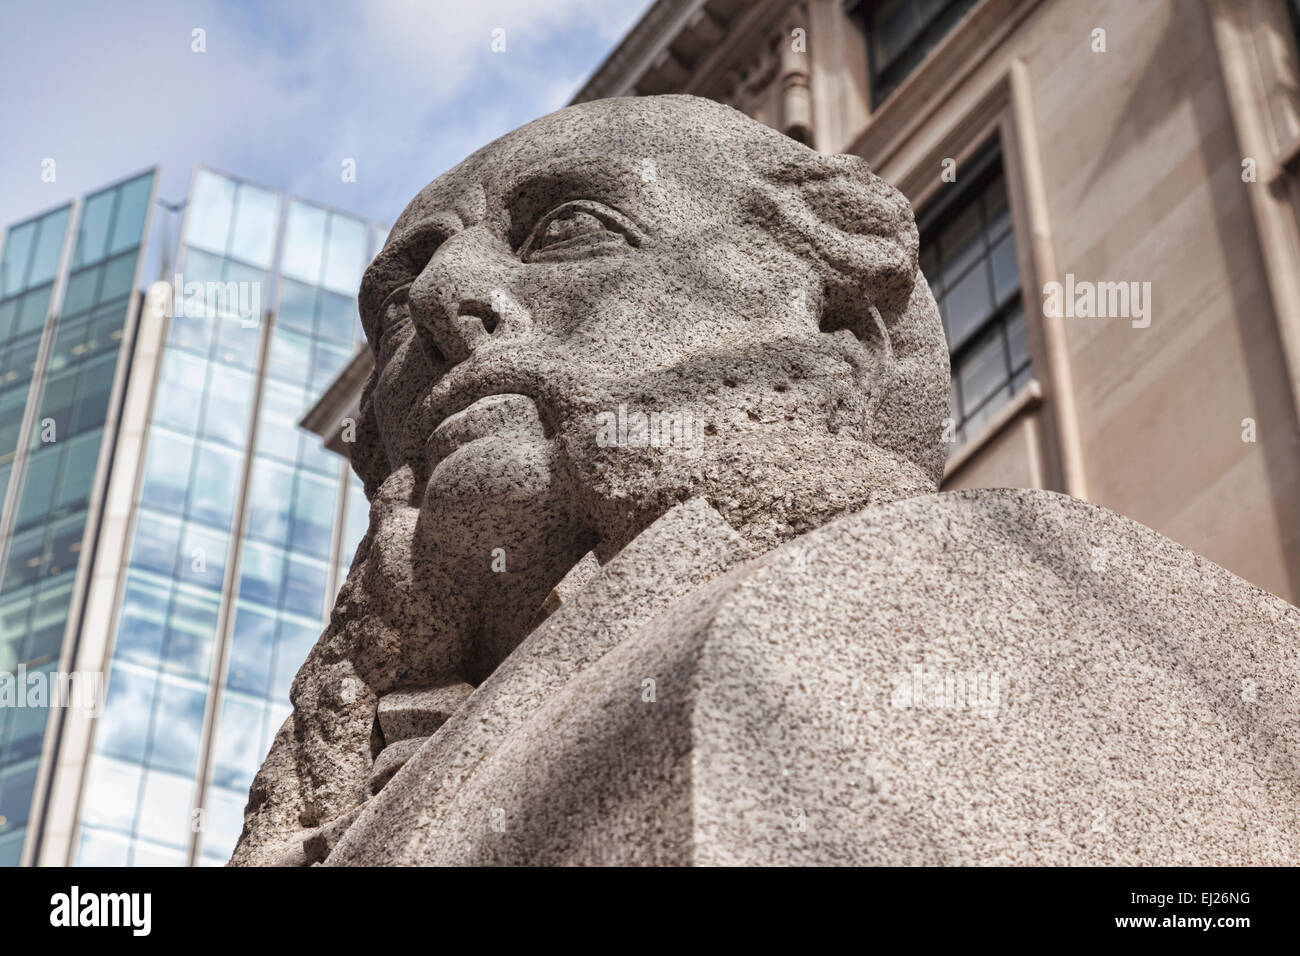 La statue de Paul Julius Reuter, Royal Exchange, Londres, Angleterre. Banque D'Images